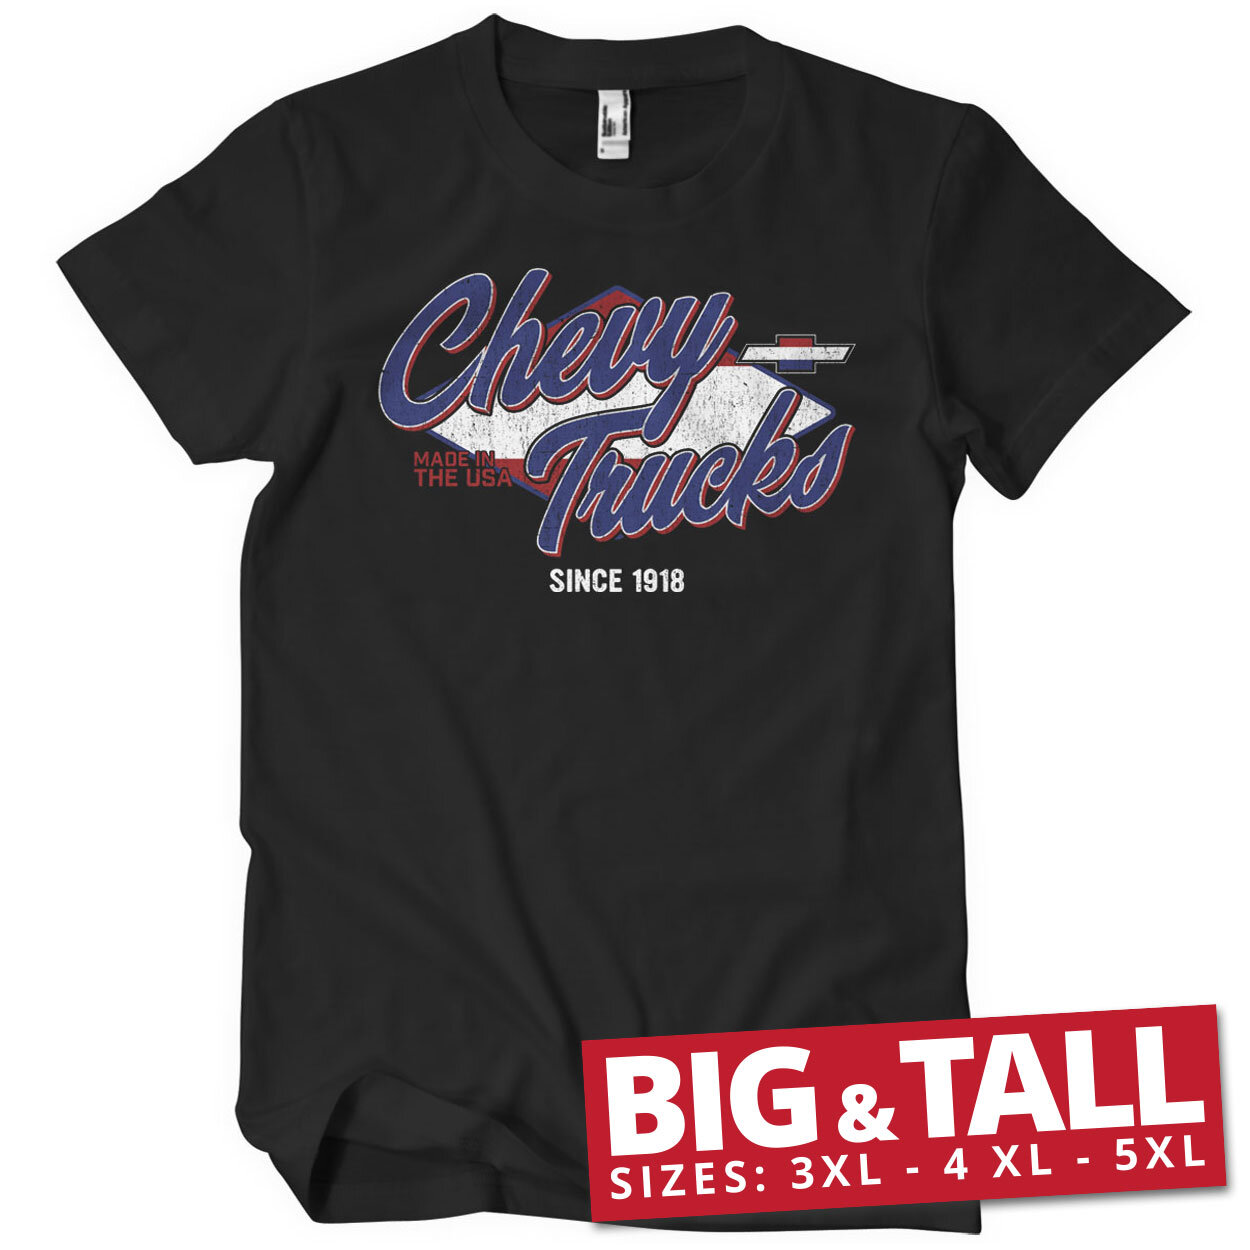 Chevy Trucks Since 1918 Big & Tall T-Shirt